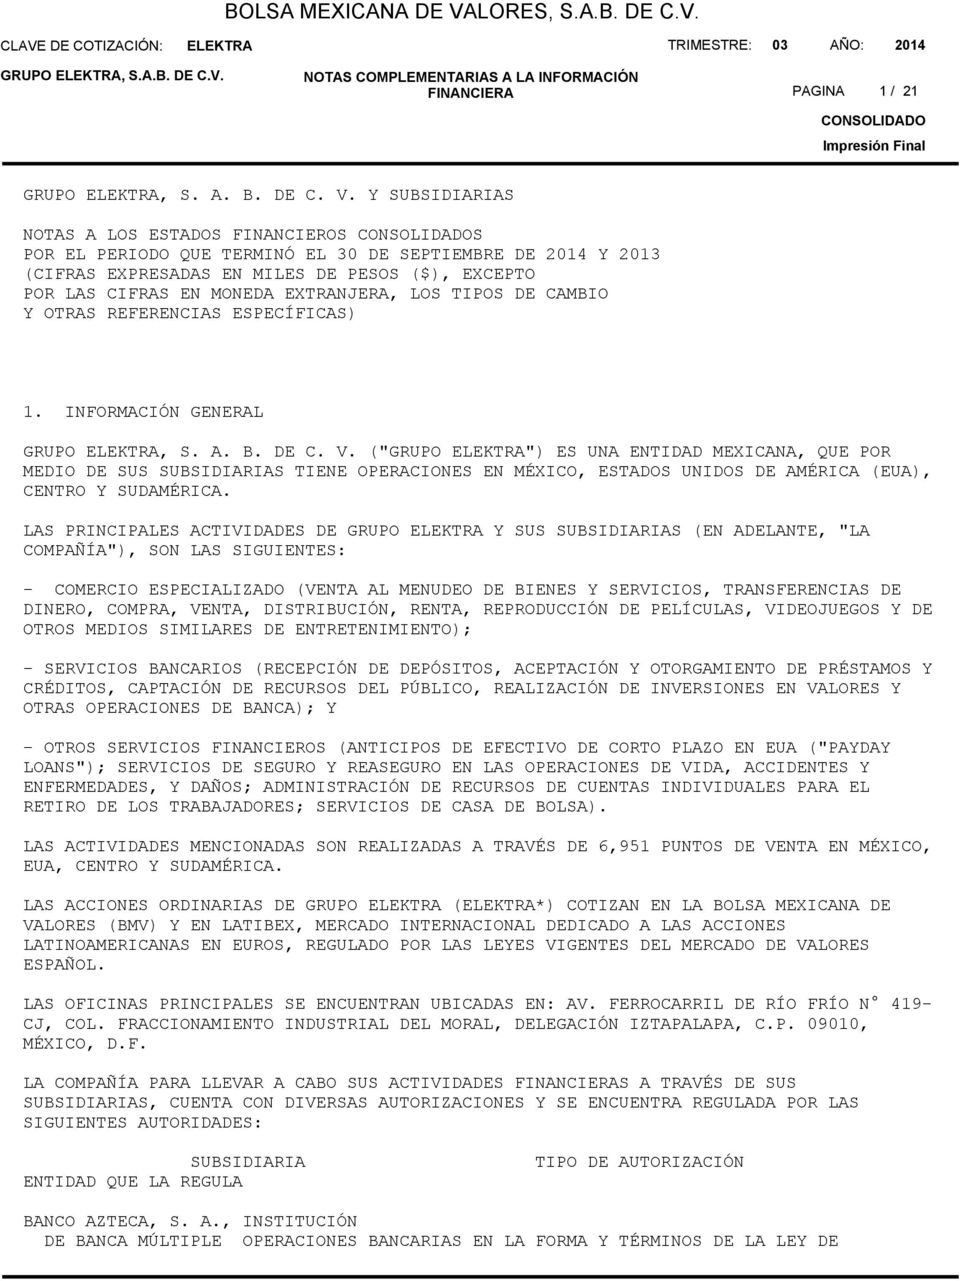 TIPOS DE CAMBIO Y OTRAS REFERENCIAS ESPECÍFICAS) 1. INFORMACIÓN GENERAL GRUPO, S. A. B. DE C. V.